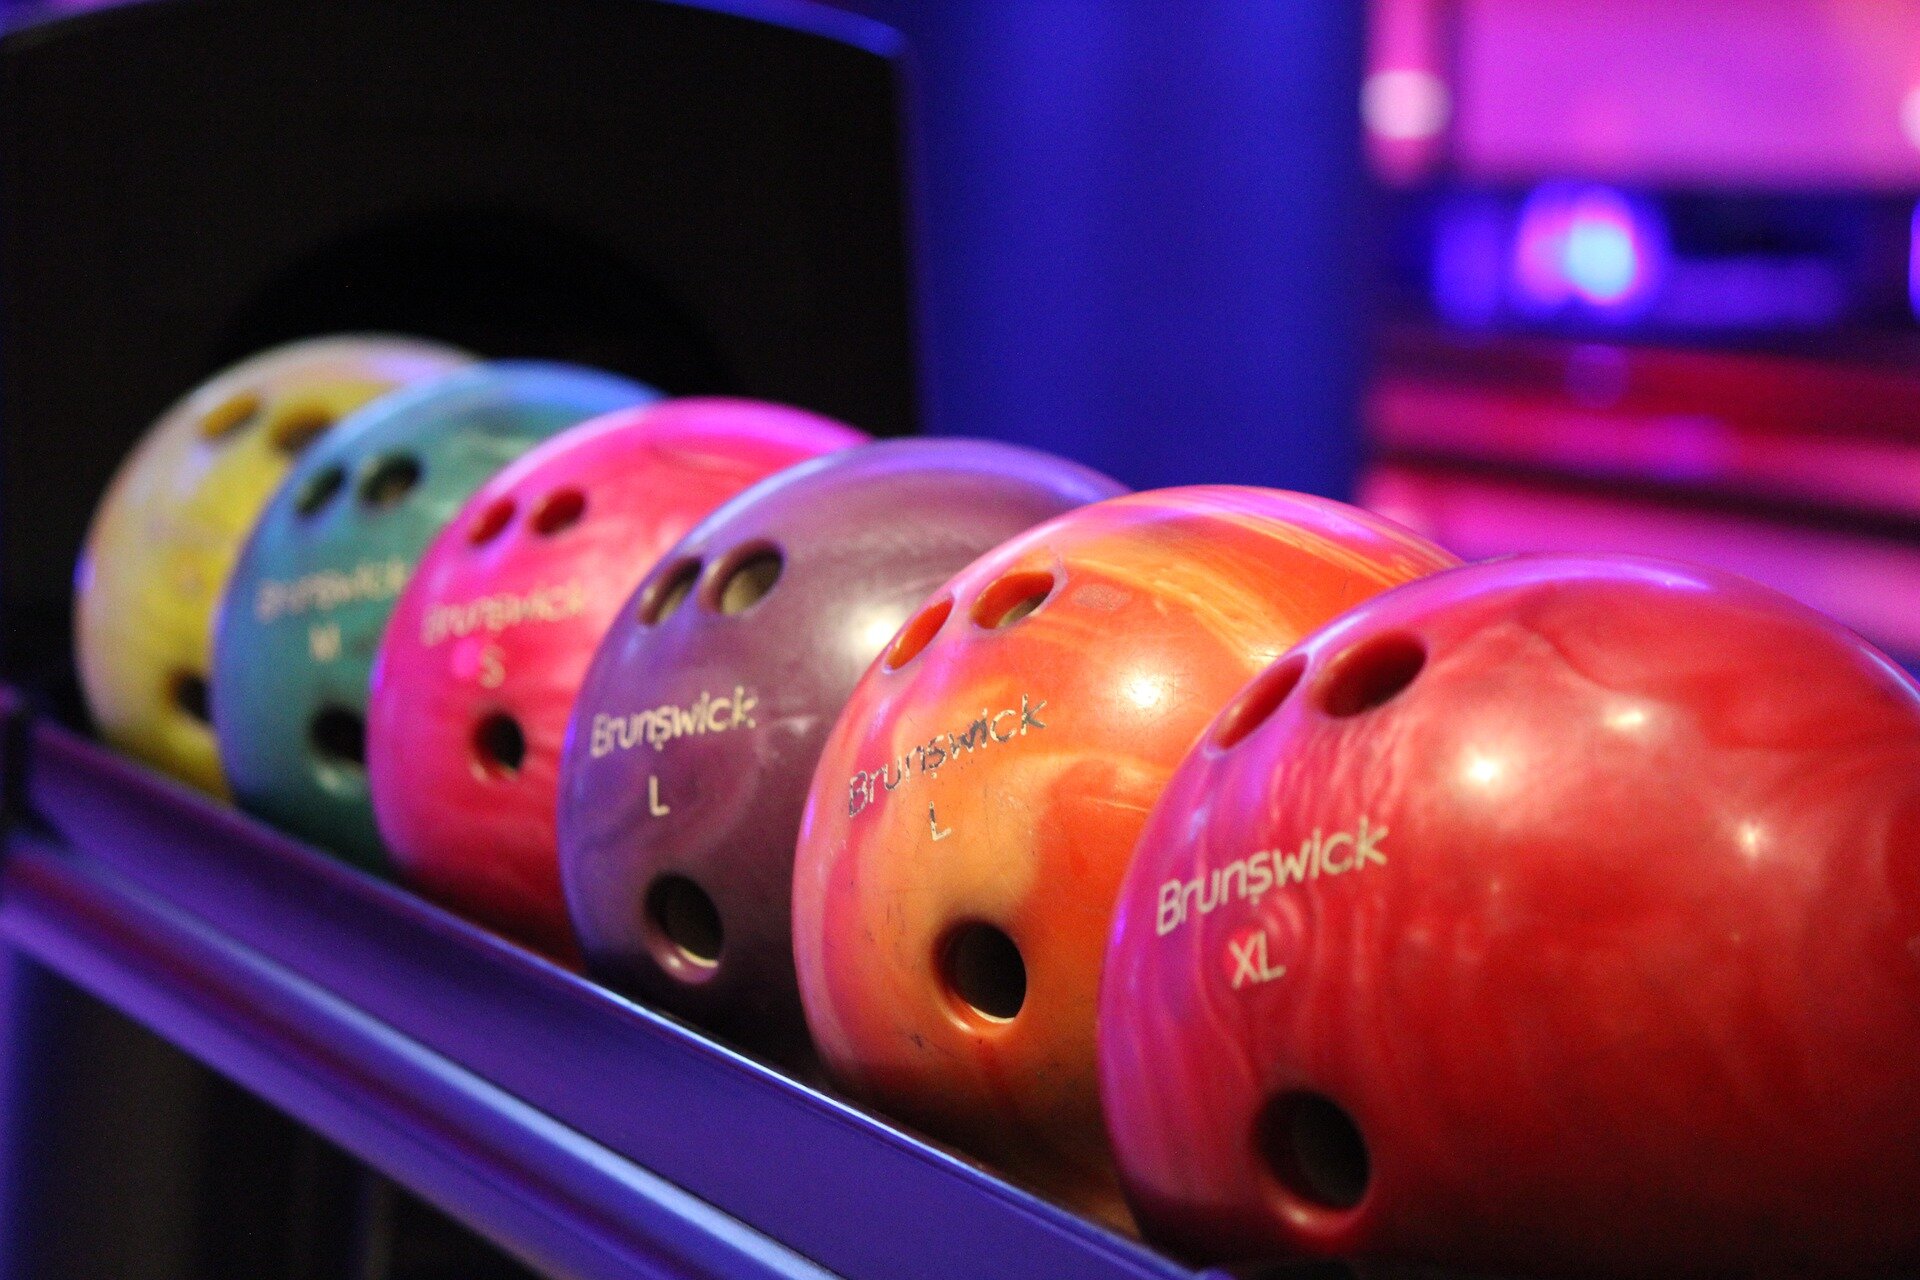 Rys. a. Zdjęcie przedstawia kolorowe kule (bowling) do zbijania kręgli, ułożone na półce. W kulach widoczne są otwory/uchwyty na palce. 